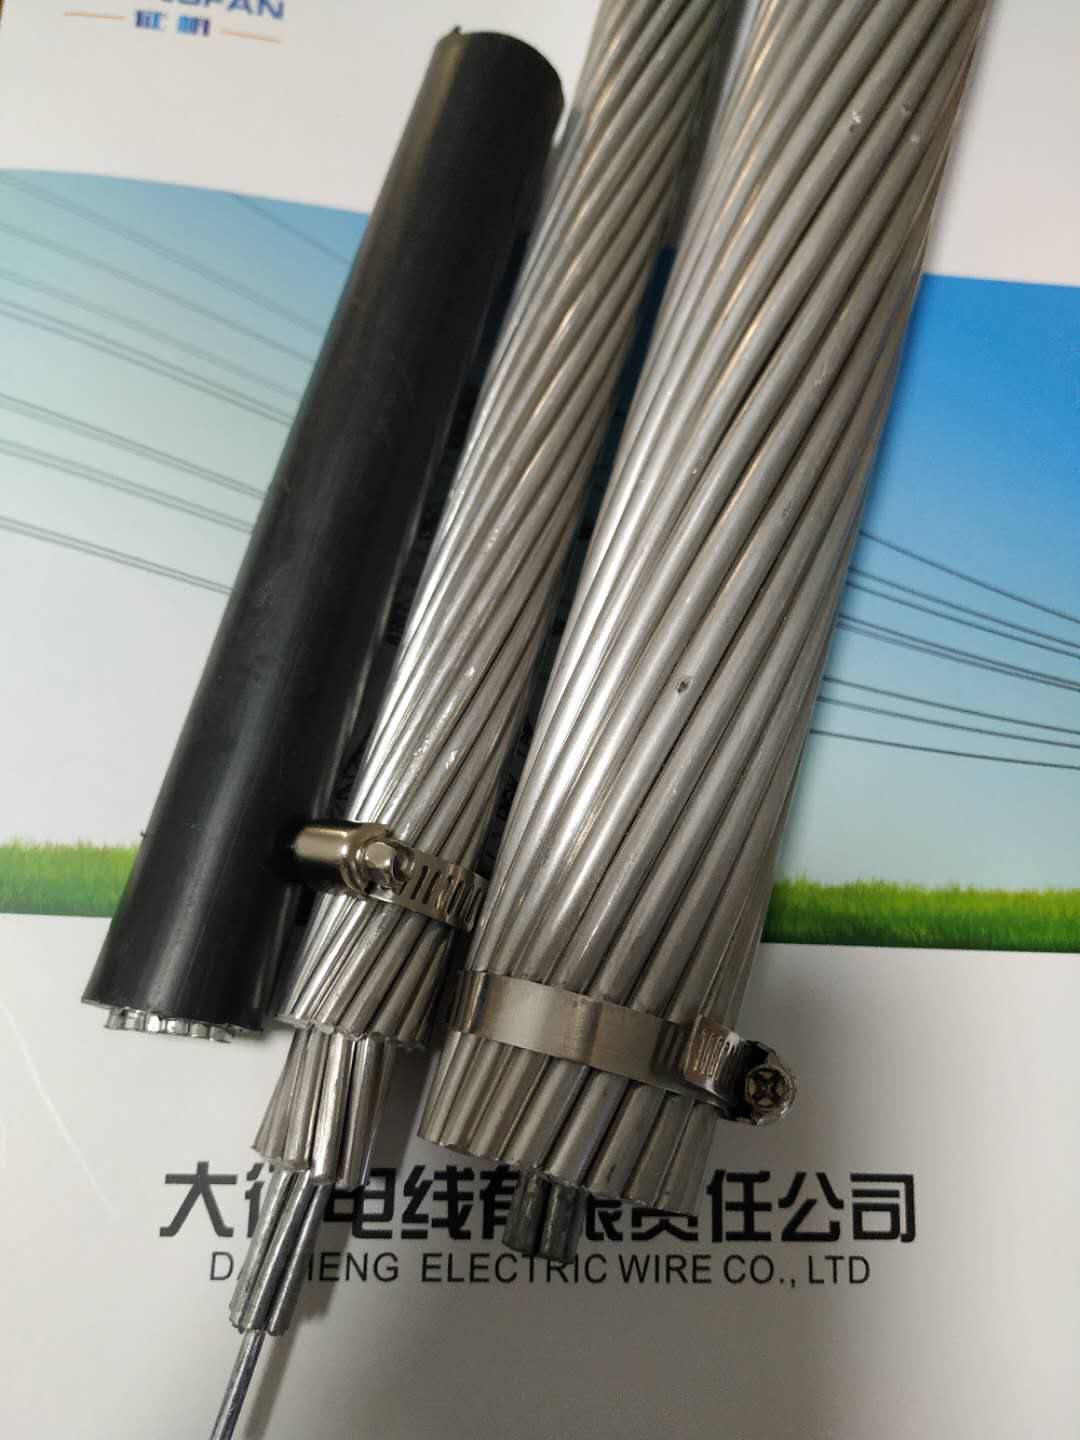 鋁包鋼芯耐熱鋁合金絞線河北廠家 JNRLH1/G1A-630/45鋁合金絞線廠